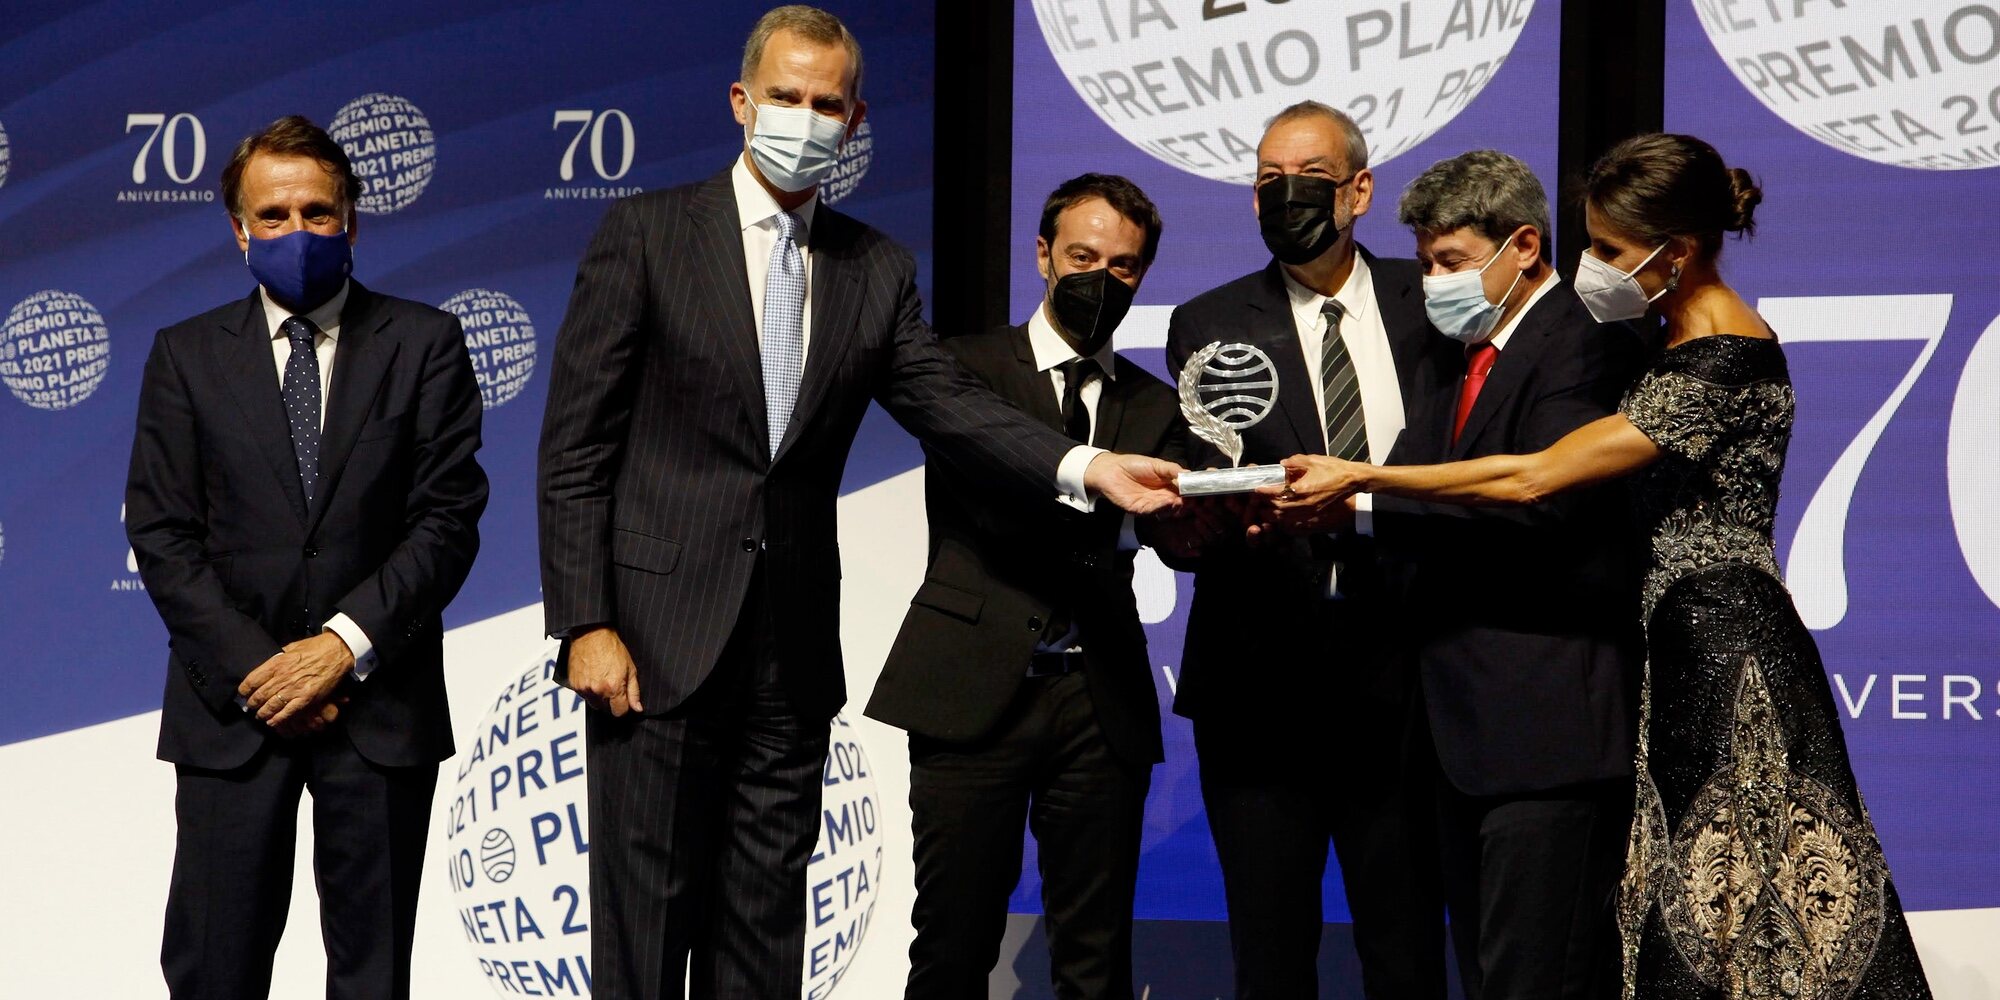 El Premio Planeta 2021 visto y vivido desde dentro: detalles, Felipe y Letizia, el 1 millón de euros y Carmen Mola